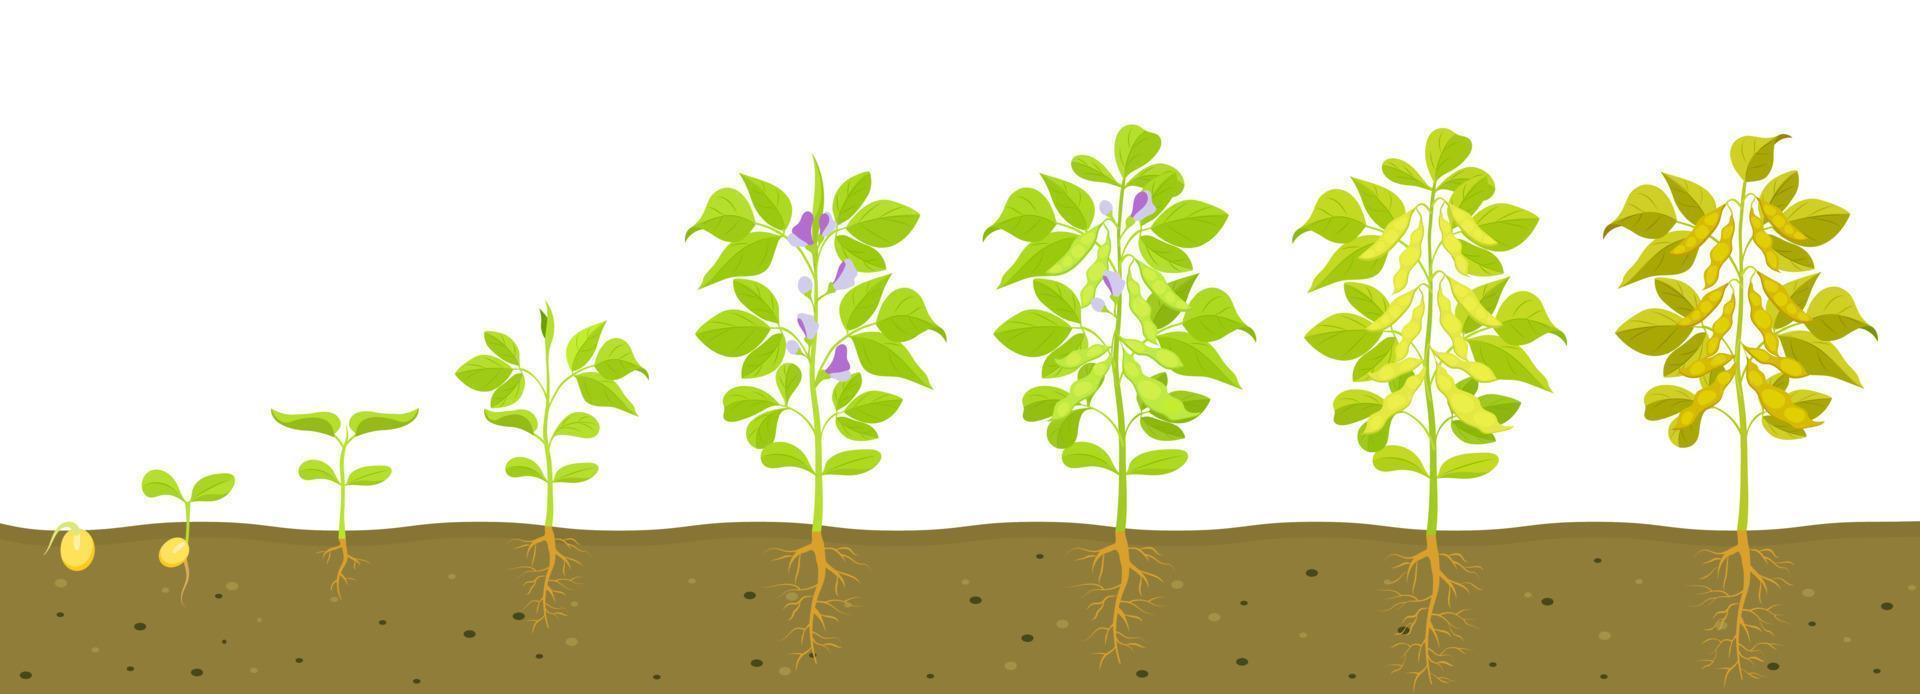 cycle de croissance du soja avec dans le sol. illustration vectorielle de légumineuses en germination. vecteur